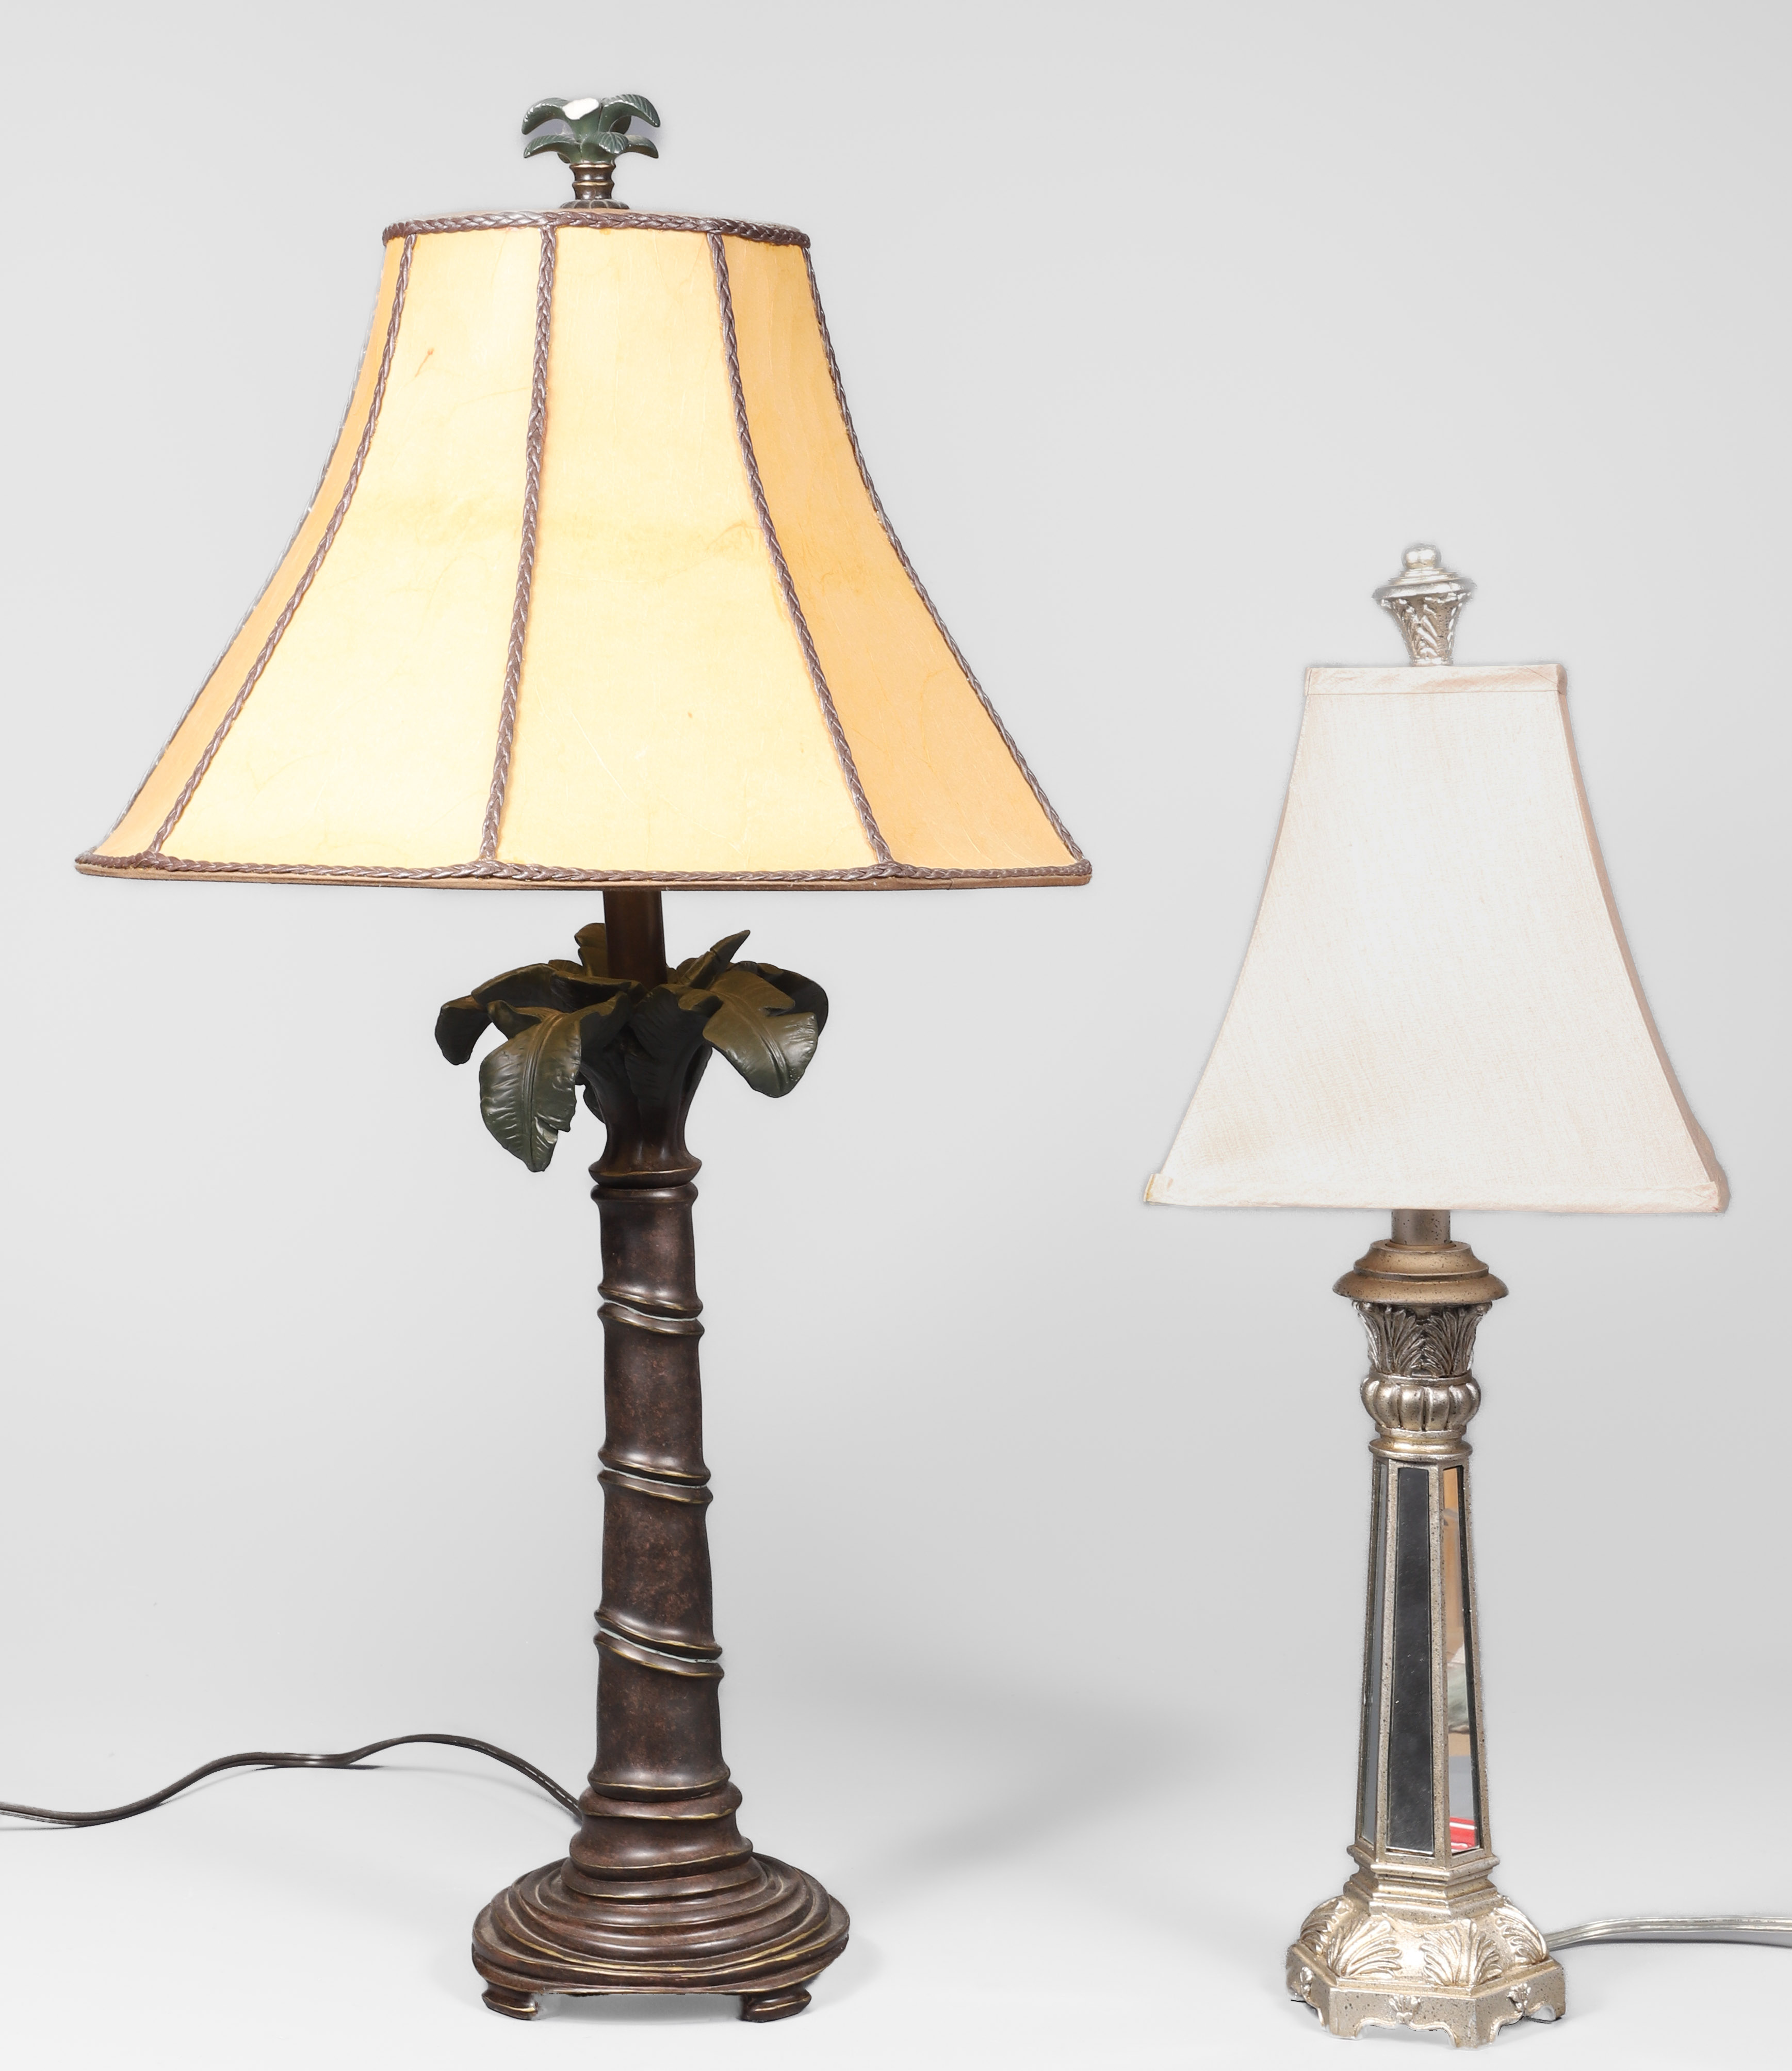  2 Contemporary table lamps c o 2e19f5